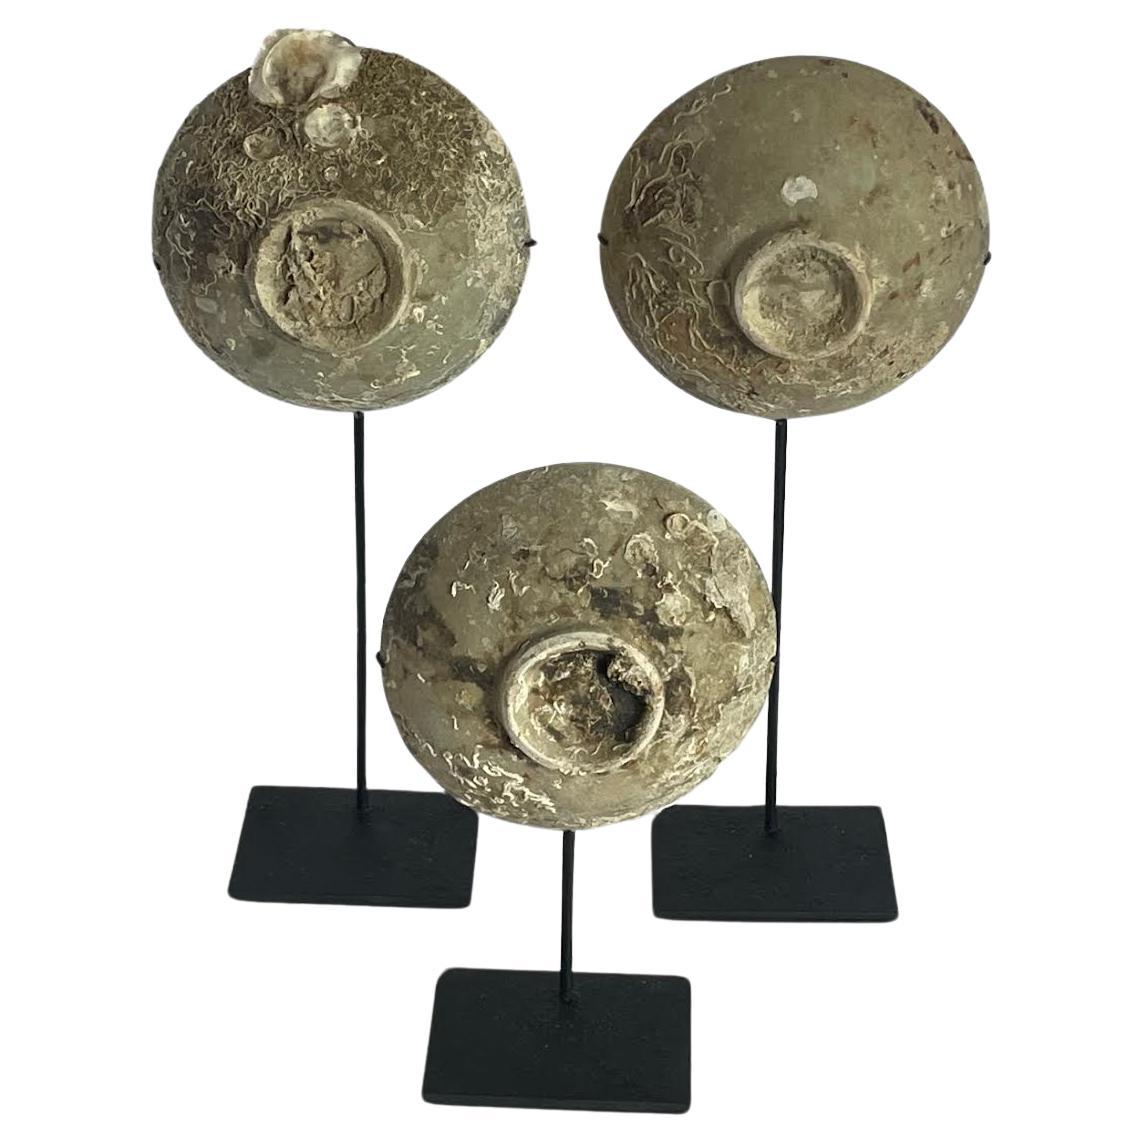 Chinesisches Ming-Dynastie-Set aus drei Keramikbechern aus dem 16. Jahrhundert, die in einem Schiffswrack entdeckt wurden.
Schöne natürliche verwitterte Patina.
Tassen messen  5